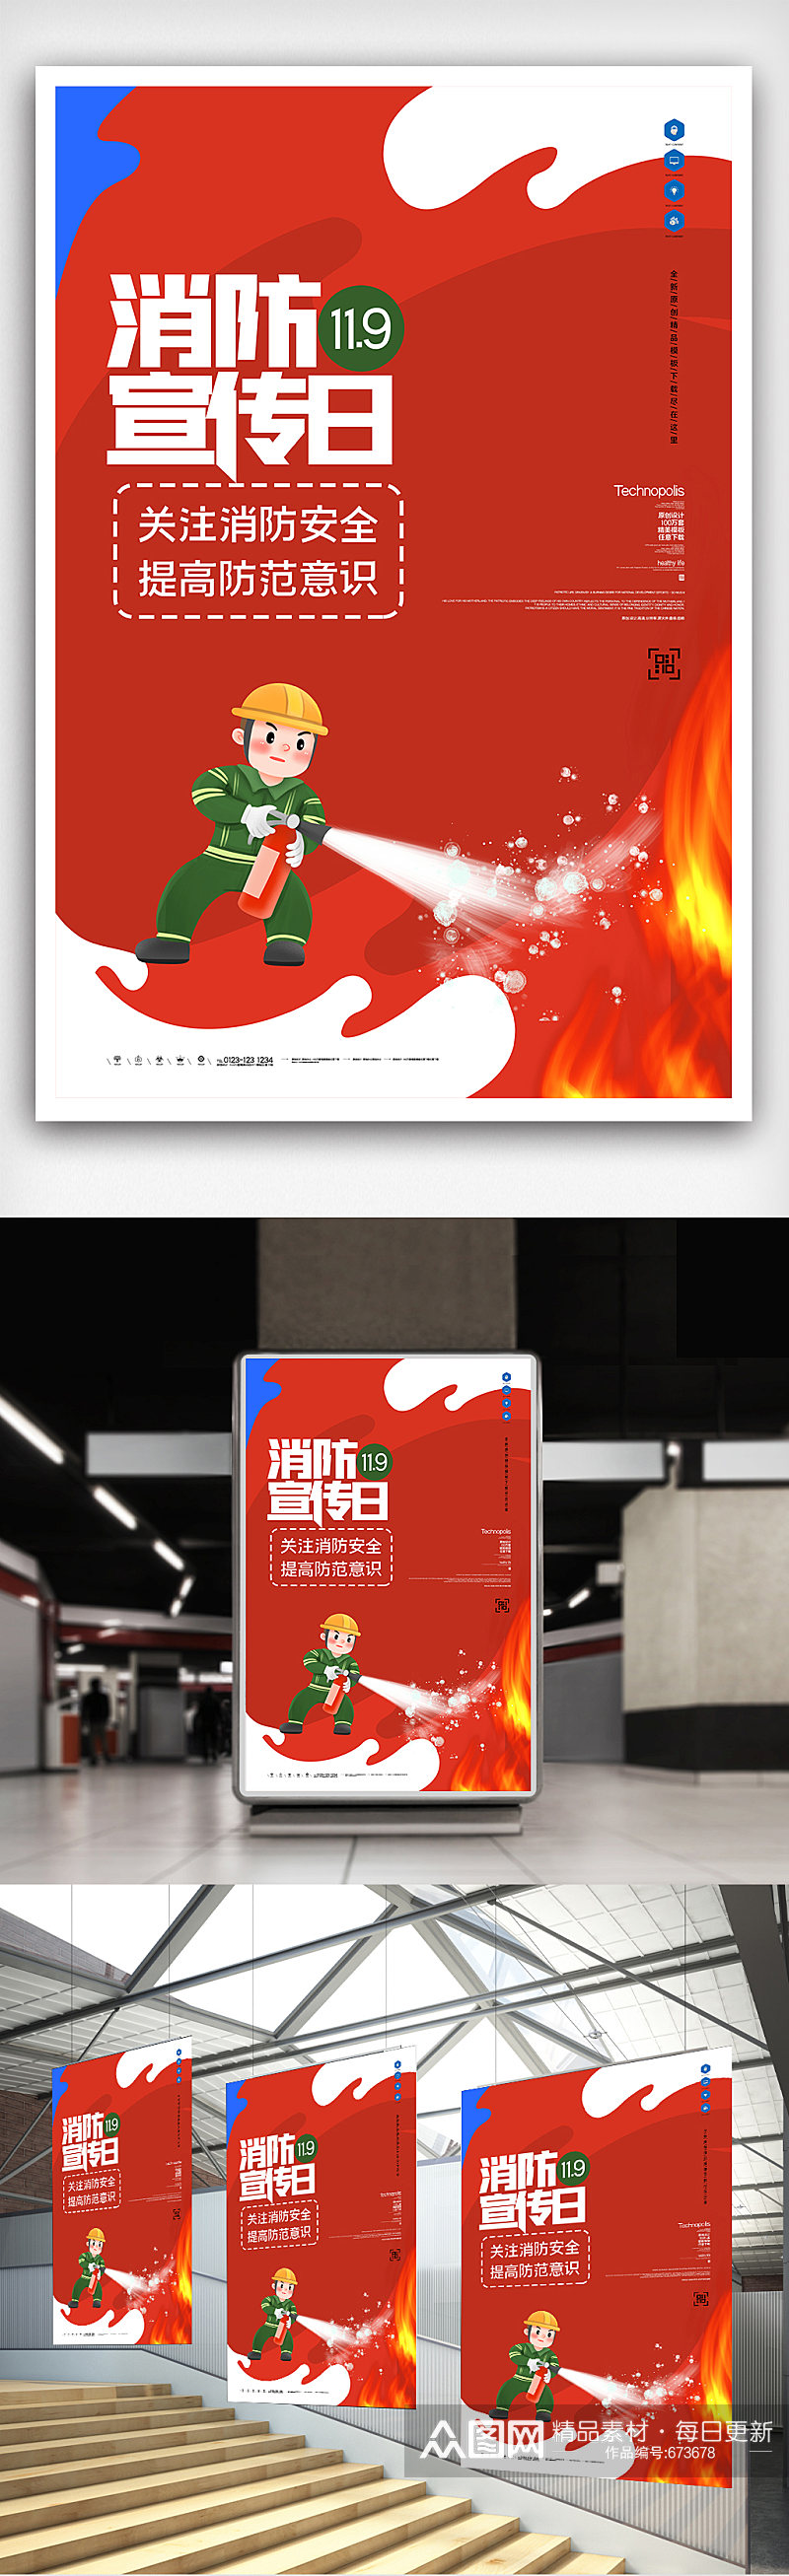 消防宣传日创意海报模板设计素材